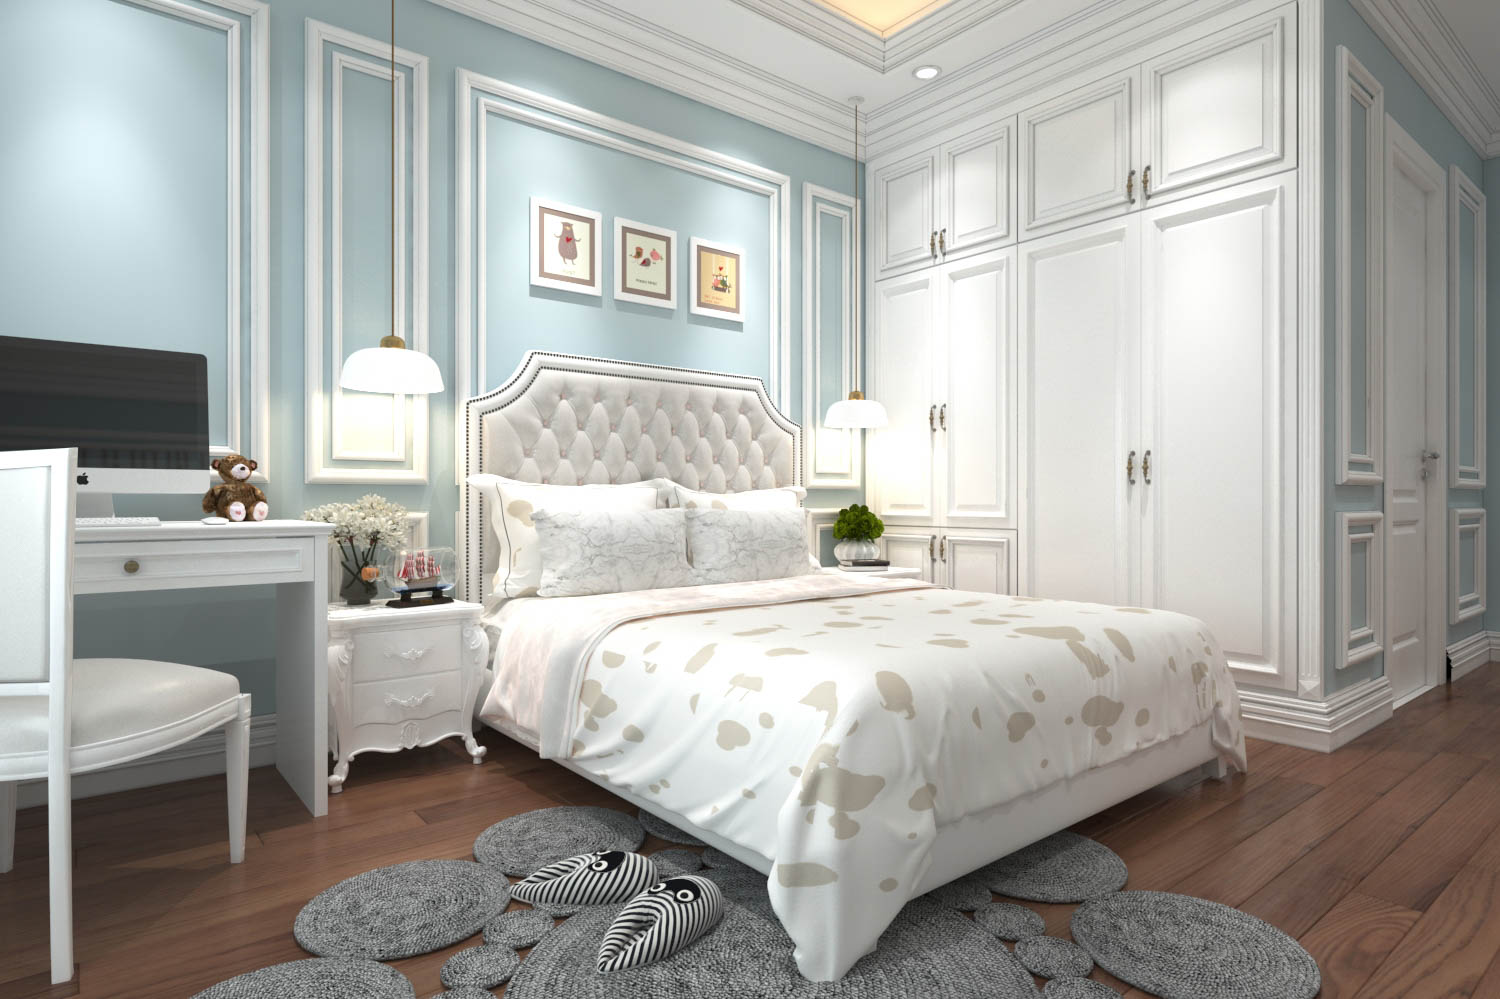 Đồ nội thất được son hoàn toàn màu trắng giúp căn phòng trở nên sang trọng